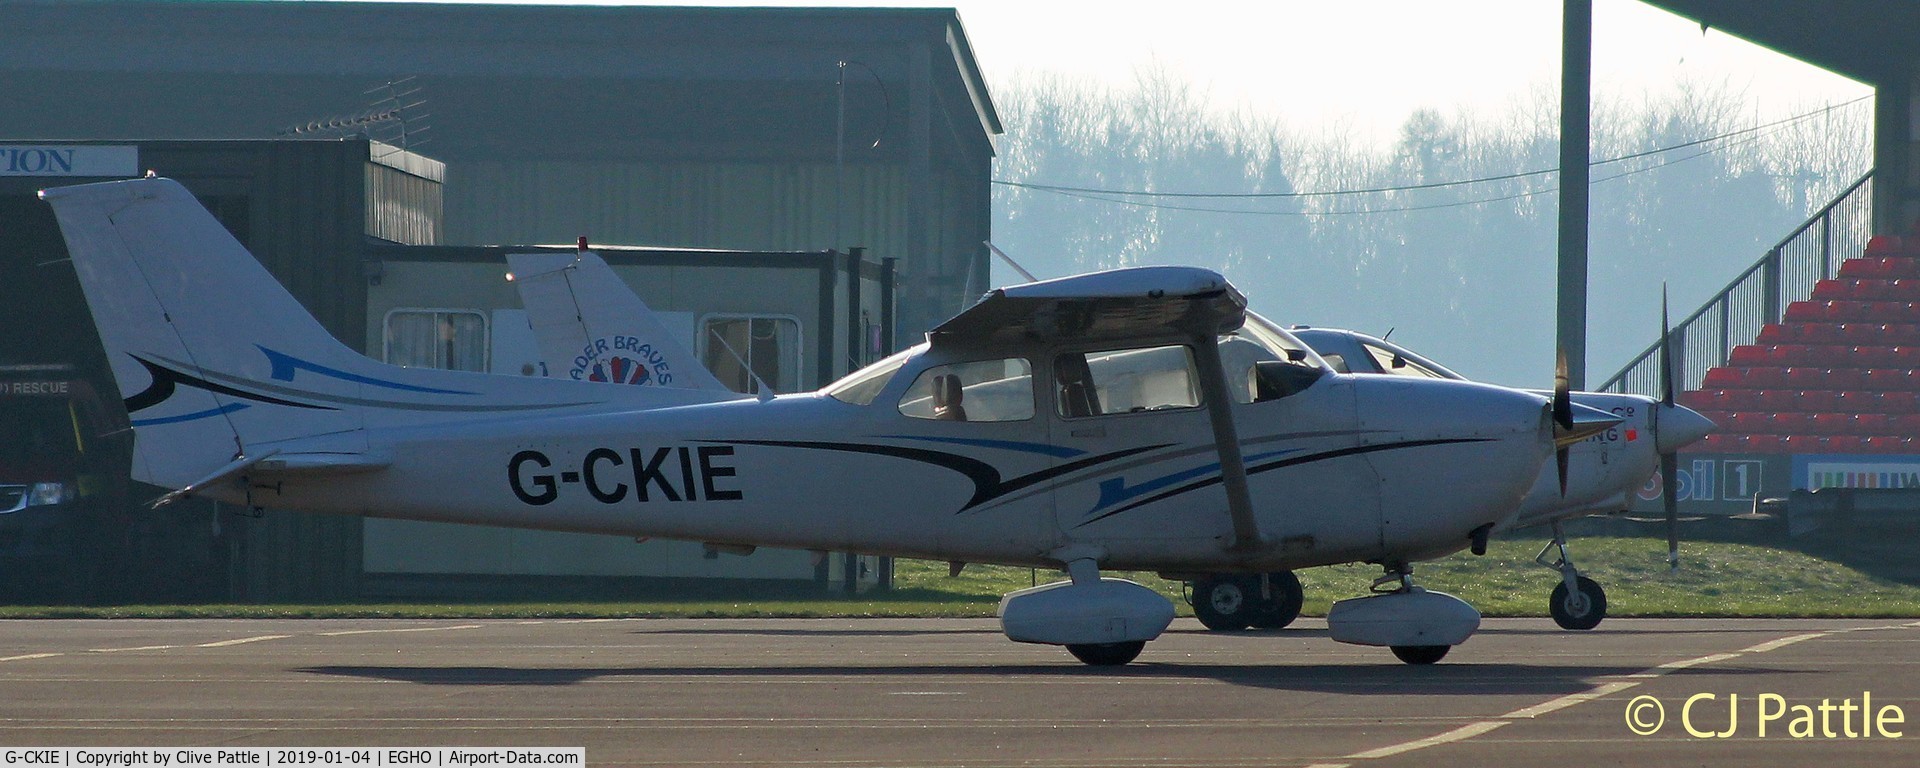 G-CKIE, 2011 Cessna 172S C/N 172S11118, Parked @ Thruxton